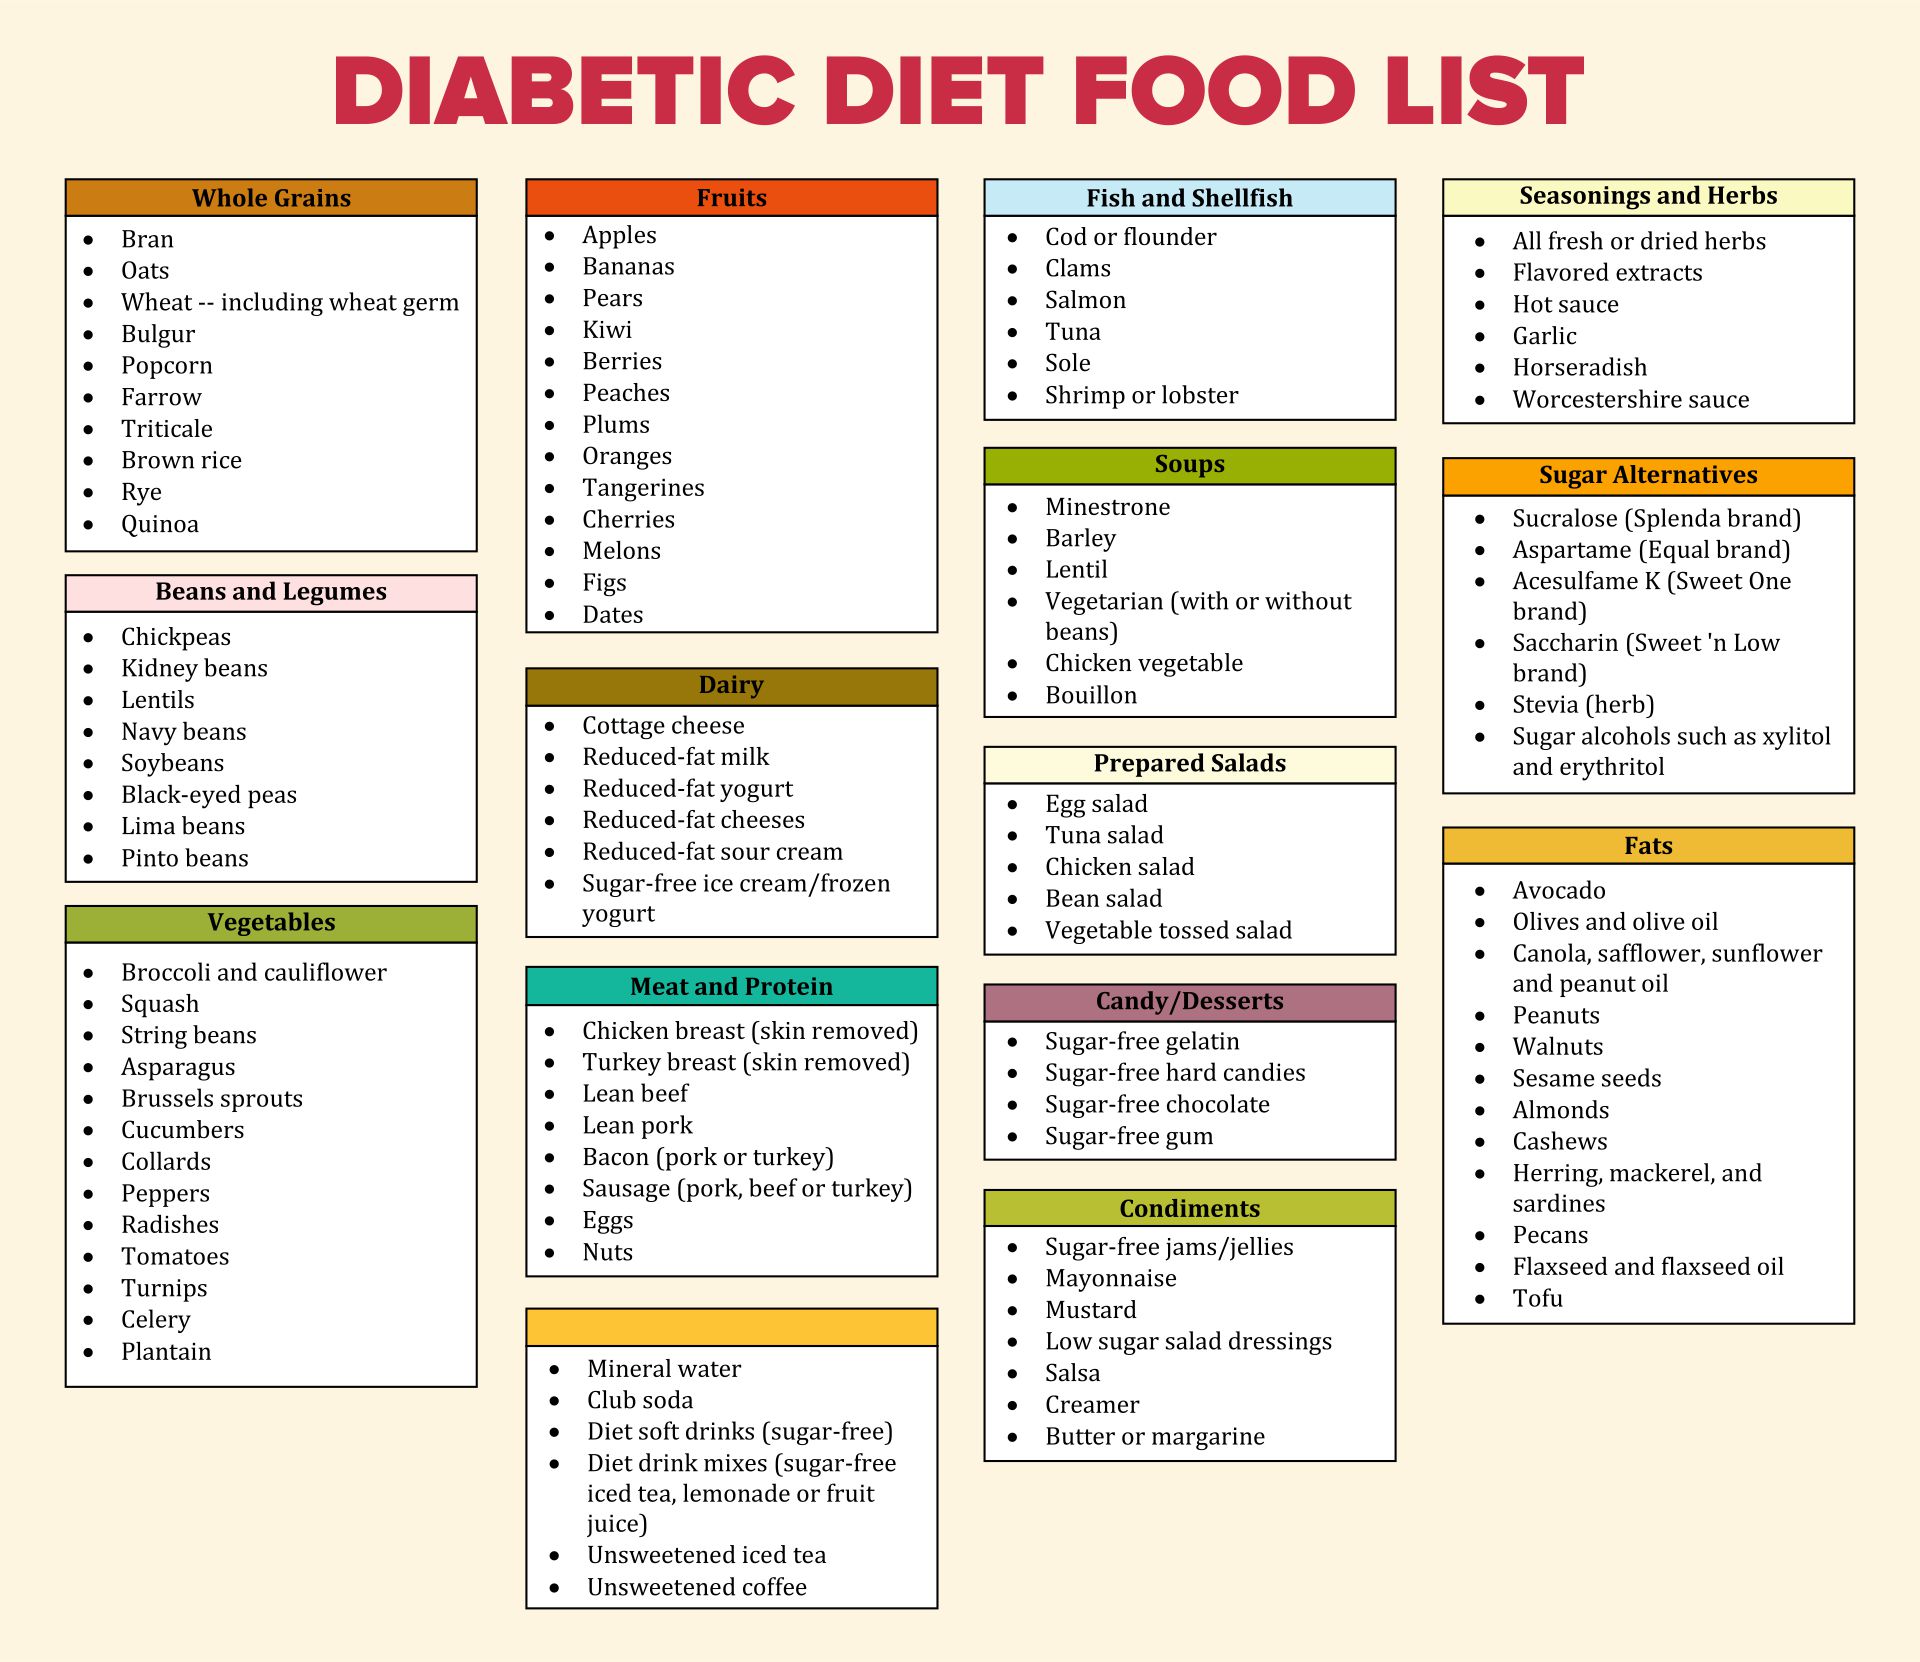 Diabetic Diet Food List Printable